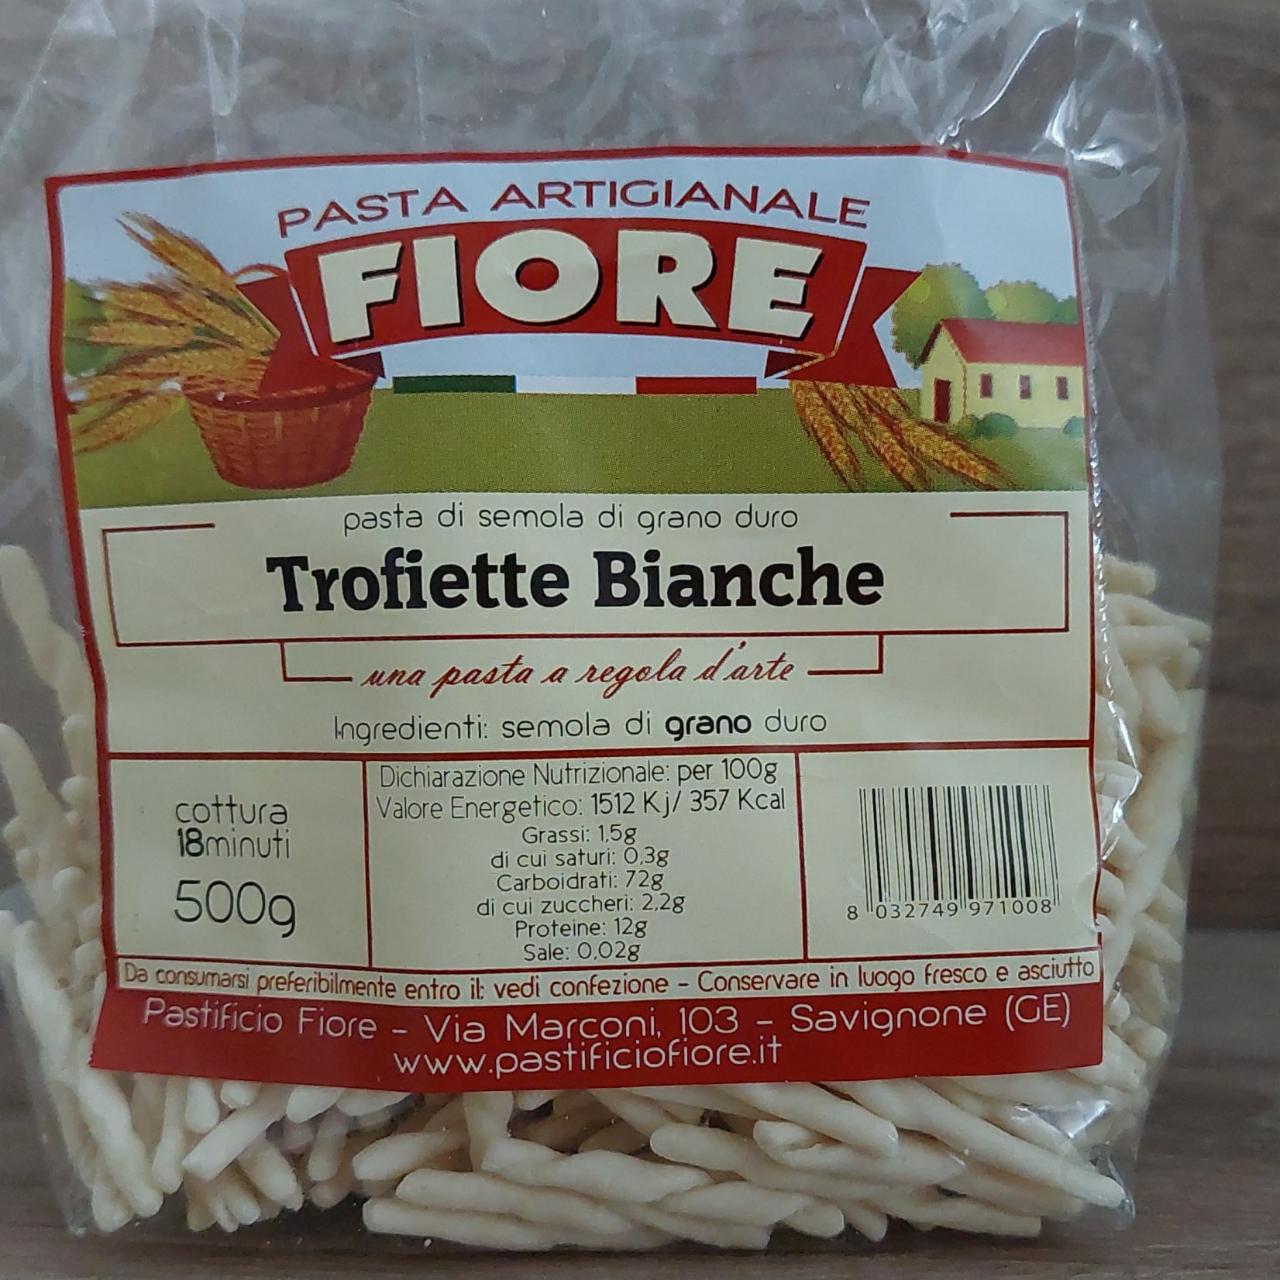 Fotografie - Trofiette Bianche Pasta Artigianale Fiore